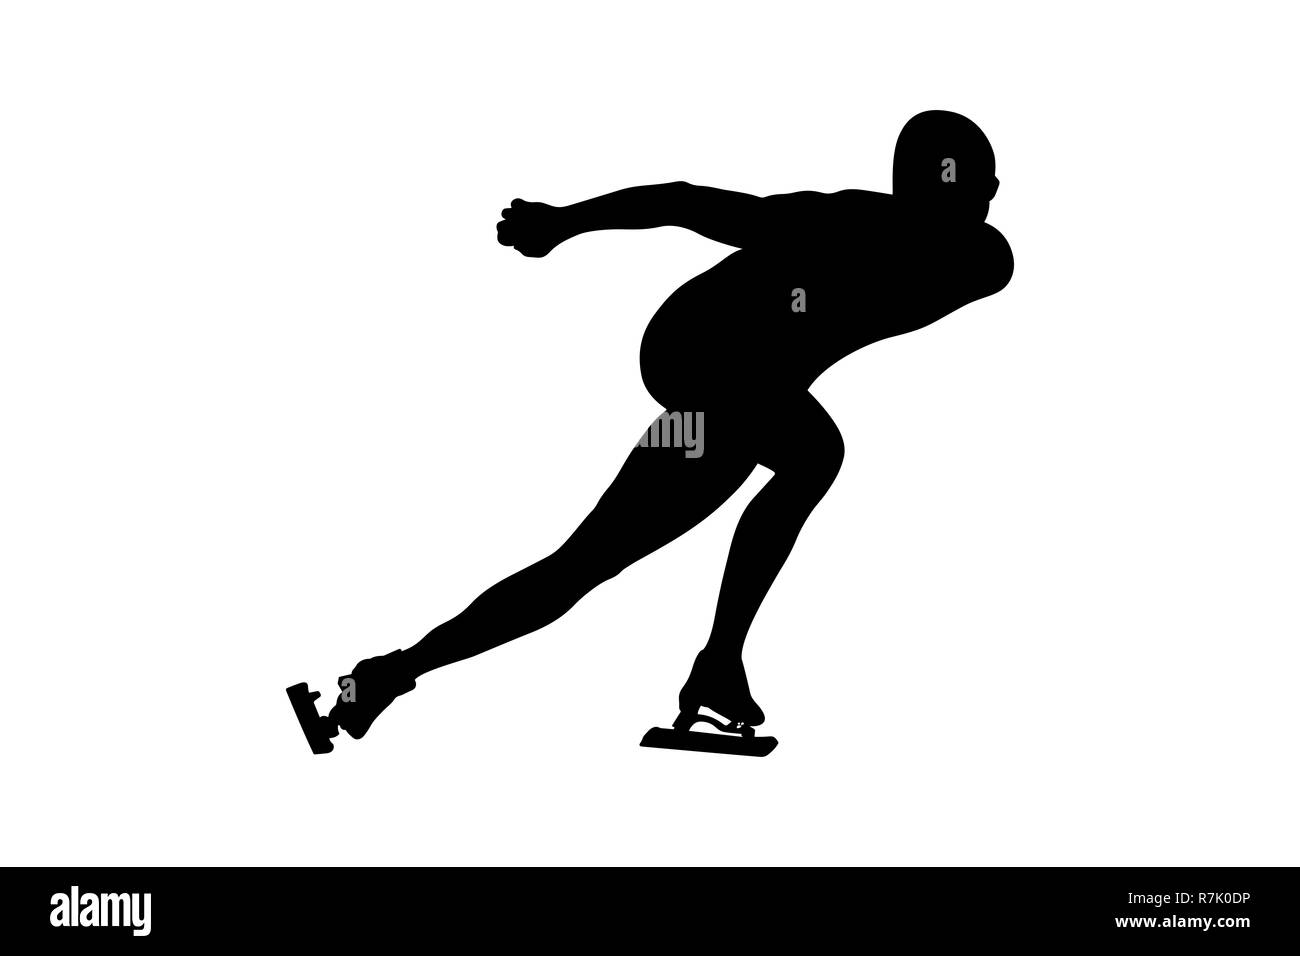 L'athlète de patinage de vitesse patinage homme silhouette noire Banque D'Images